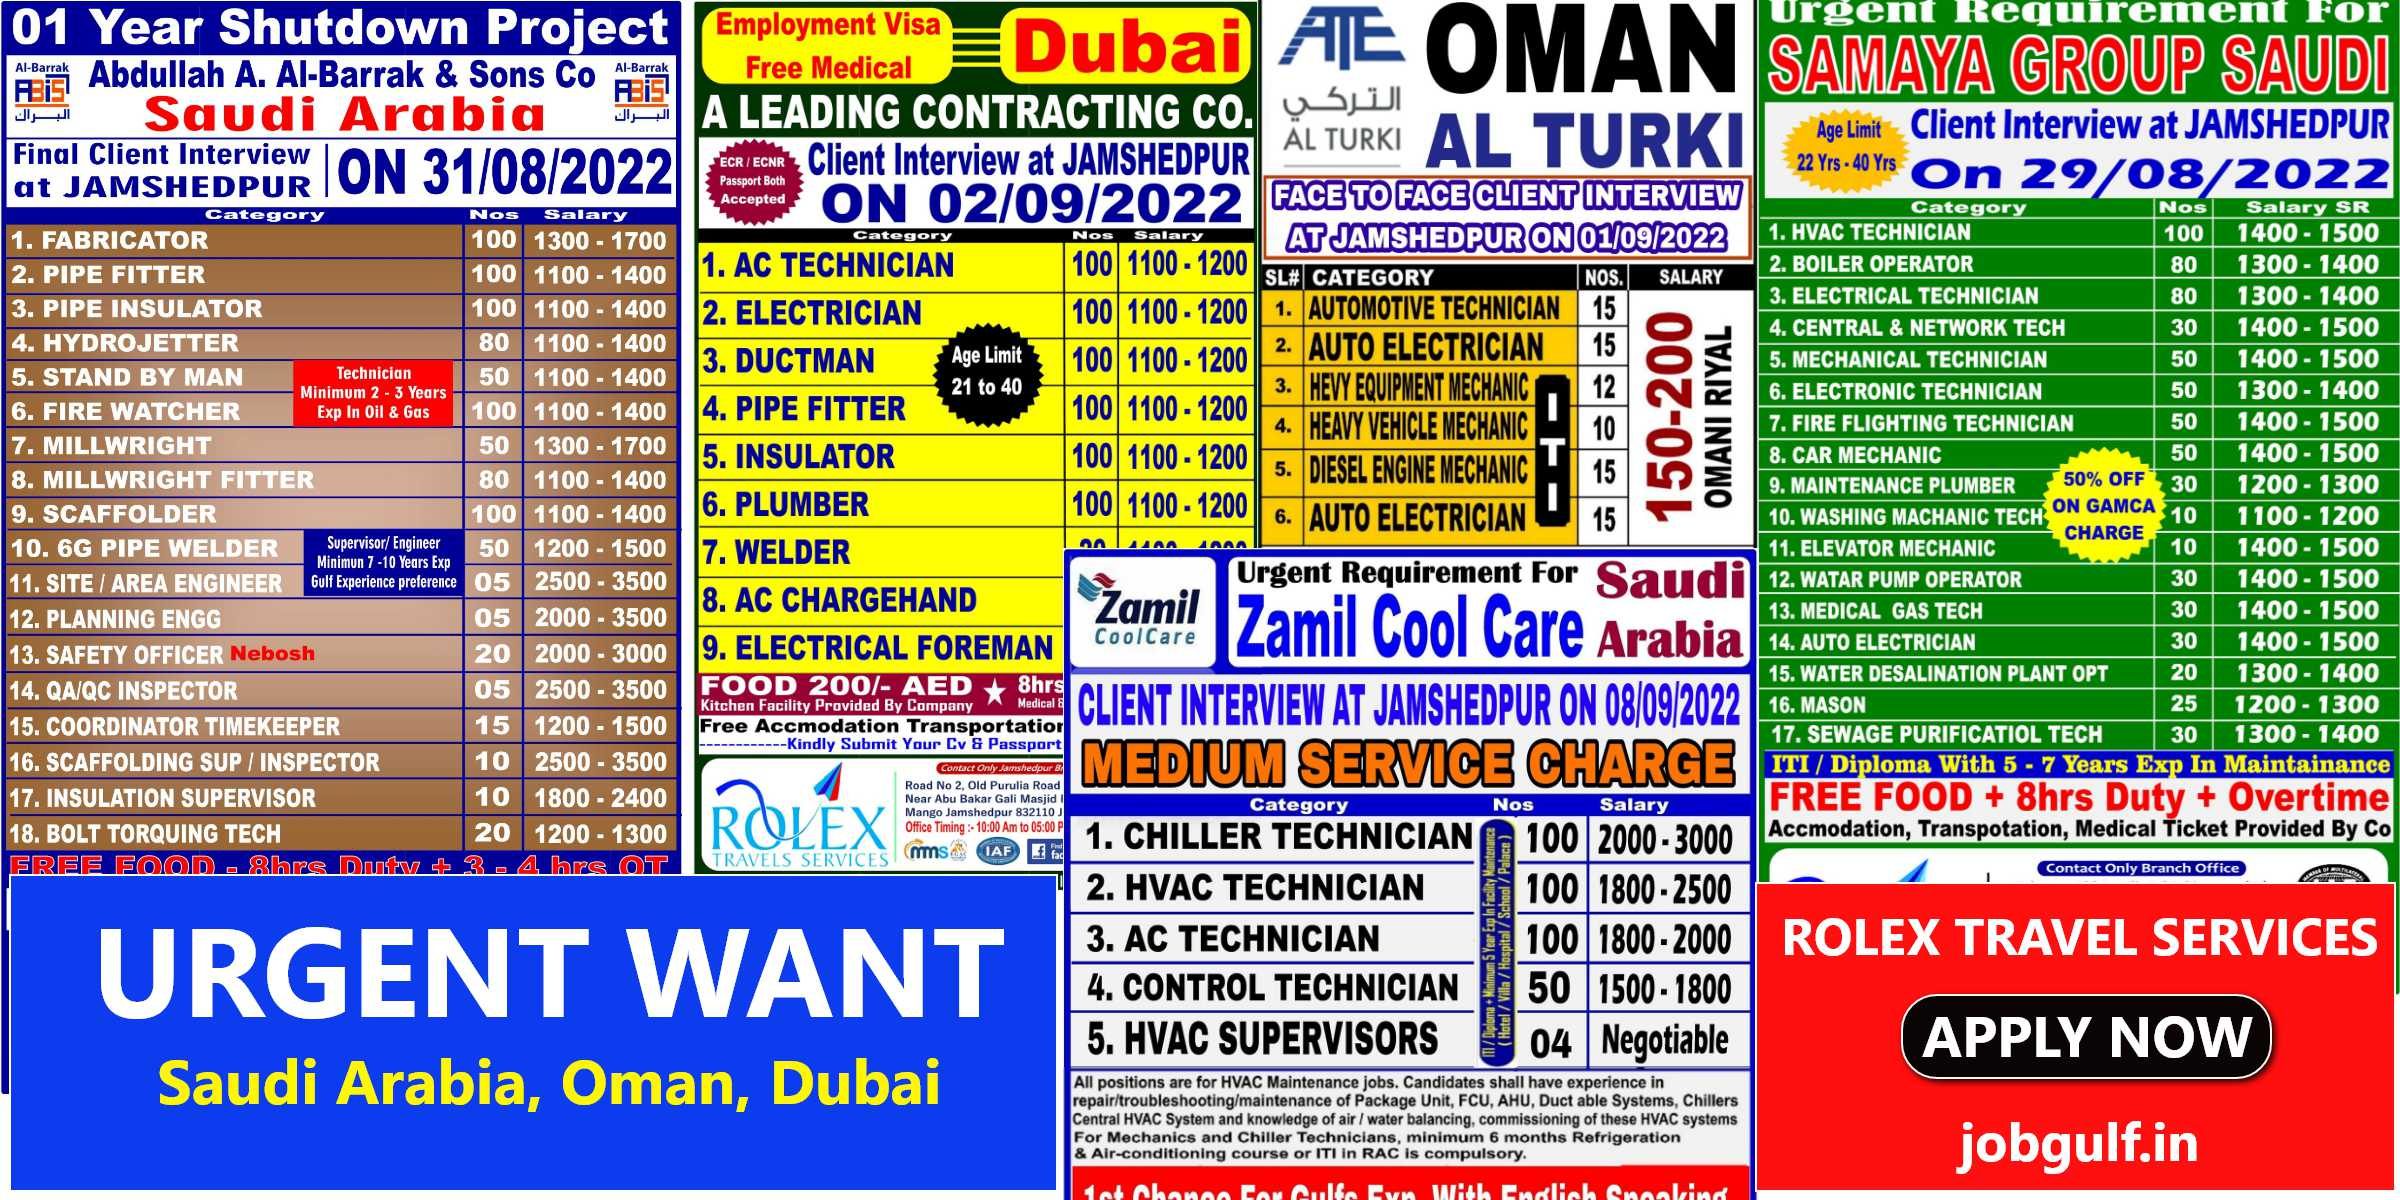 Latest Gulf jobs Want for Dubai, Saudi & Oman